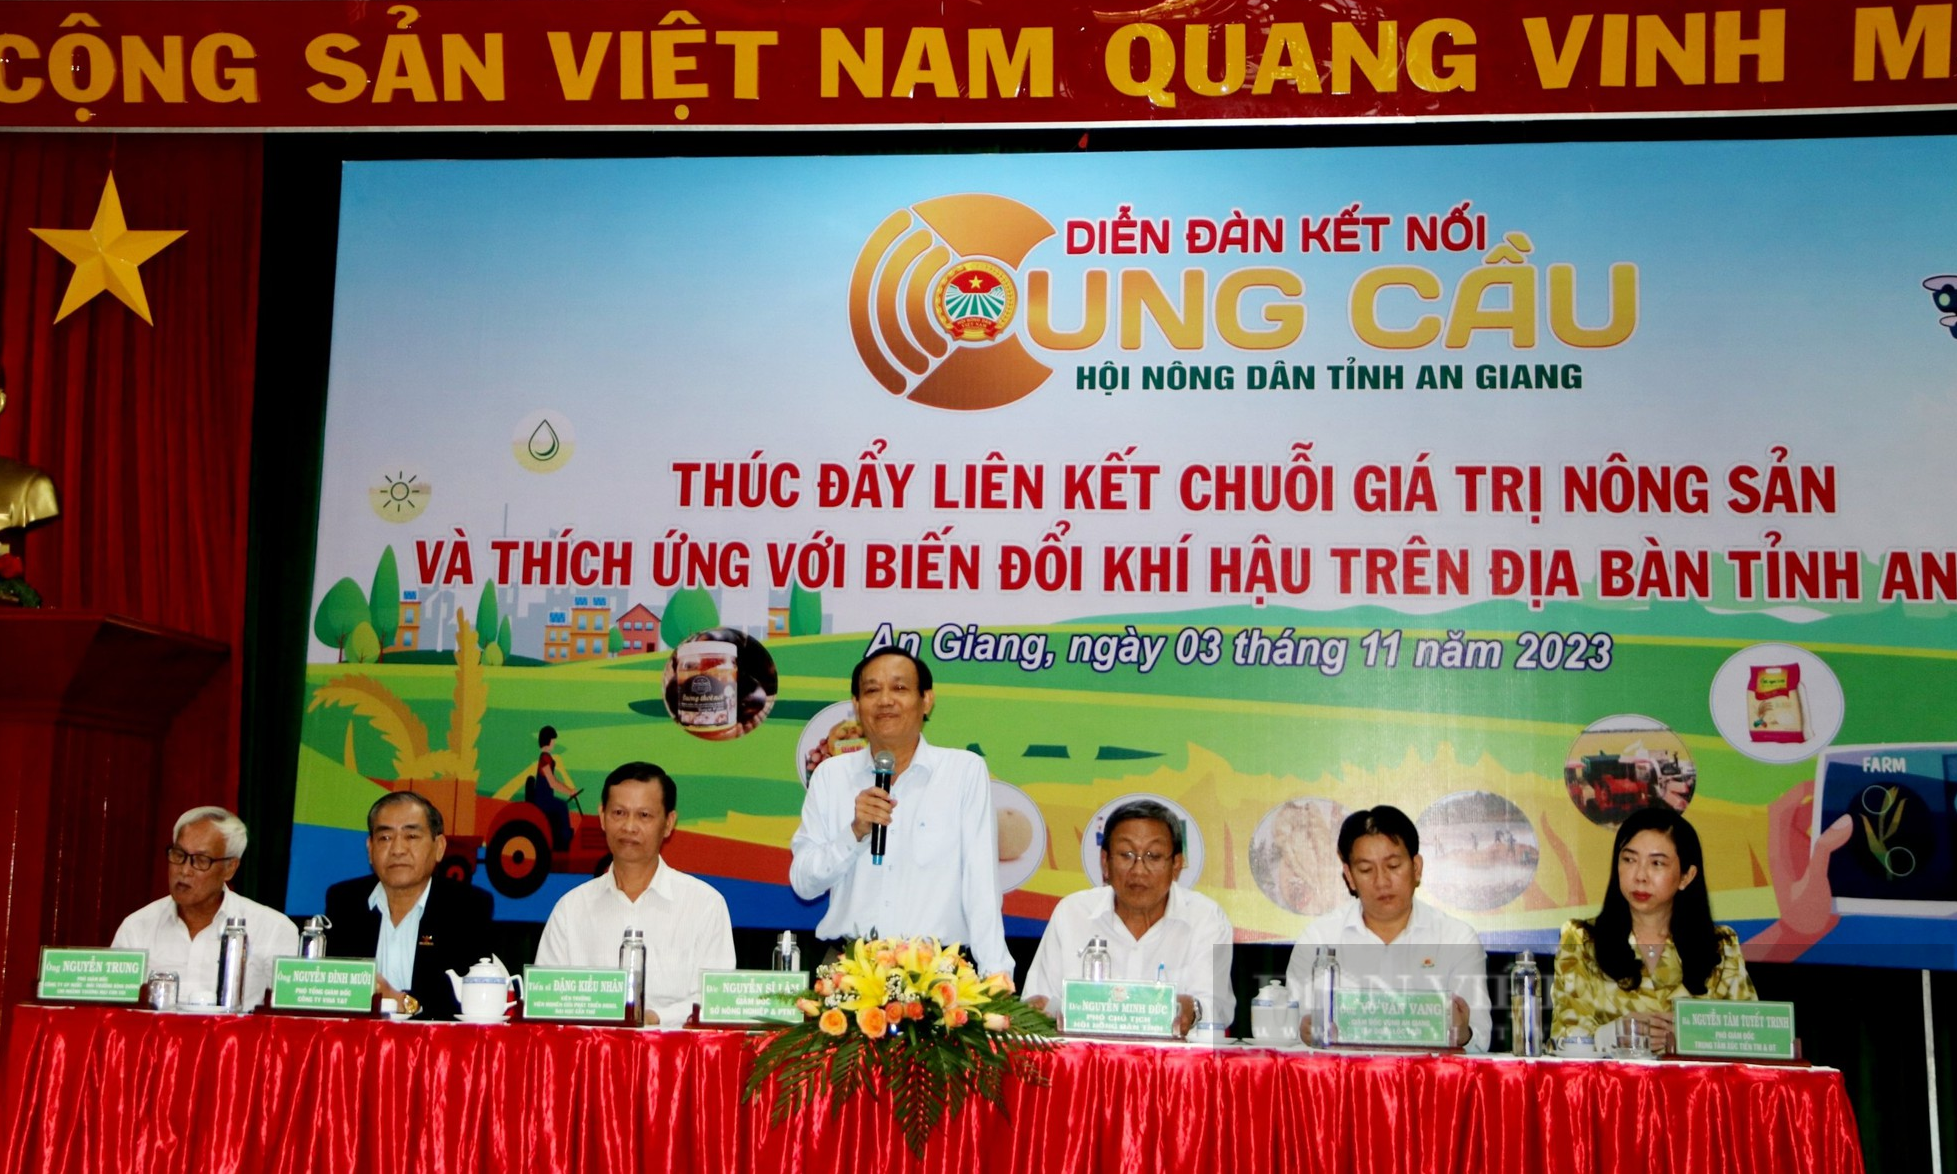 Hội Nông dân tỉnh An Giang mời chuyên gia bàn giải pháp thúc đẩy liên kết chuỗi giá trị nông sản - Ảnh 1.